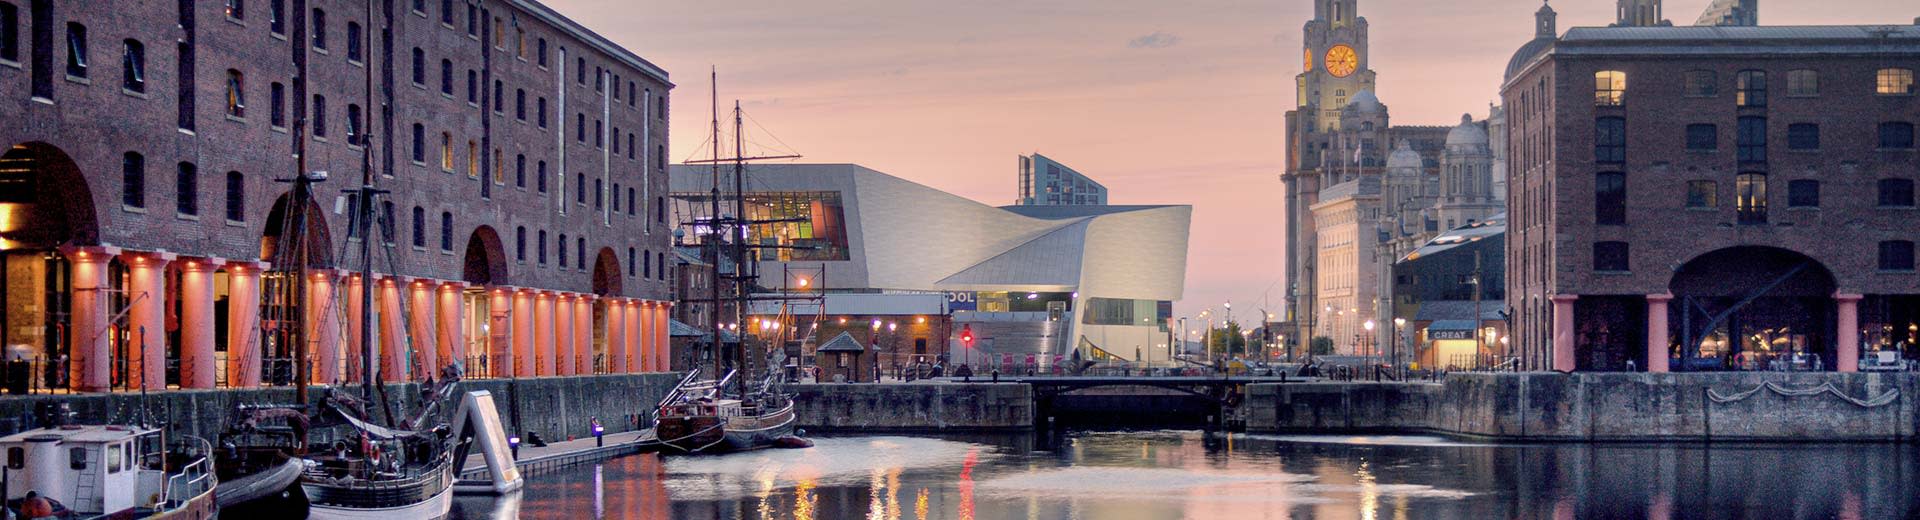 Les bâtiments modernes de Liverpool sur les rives de la rivière Mersey.